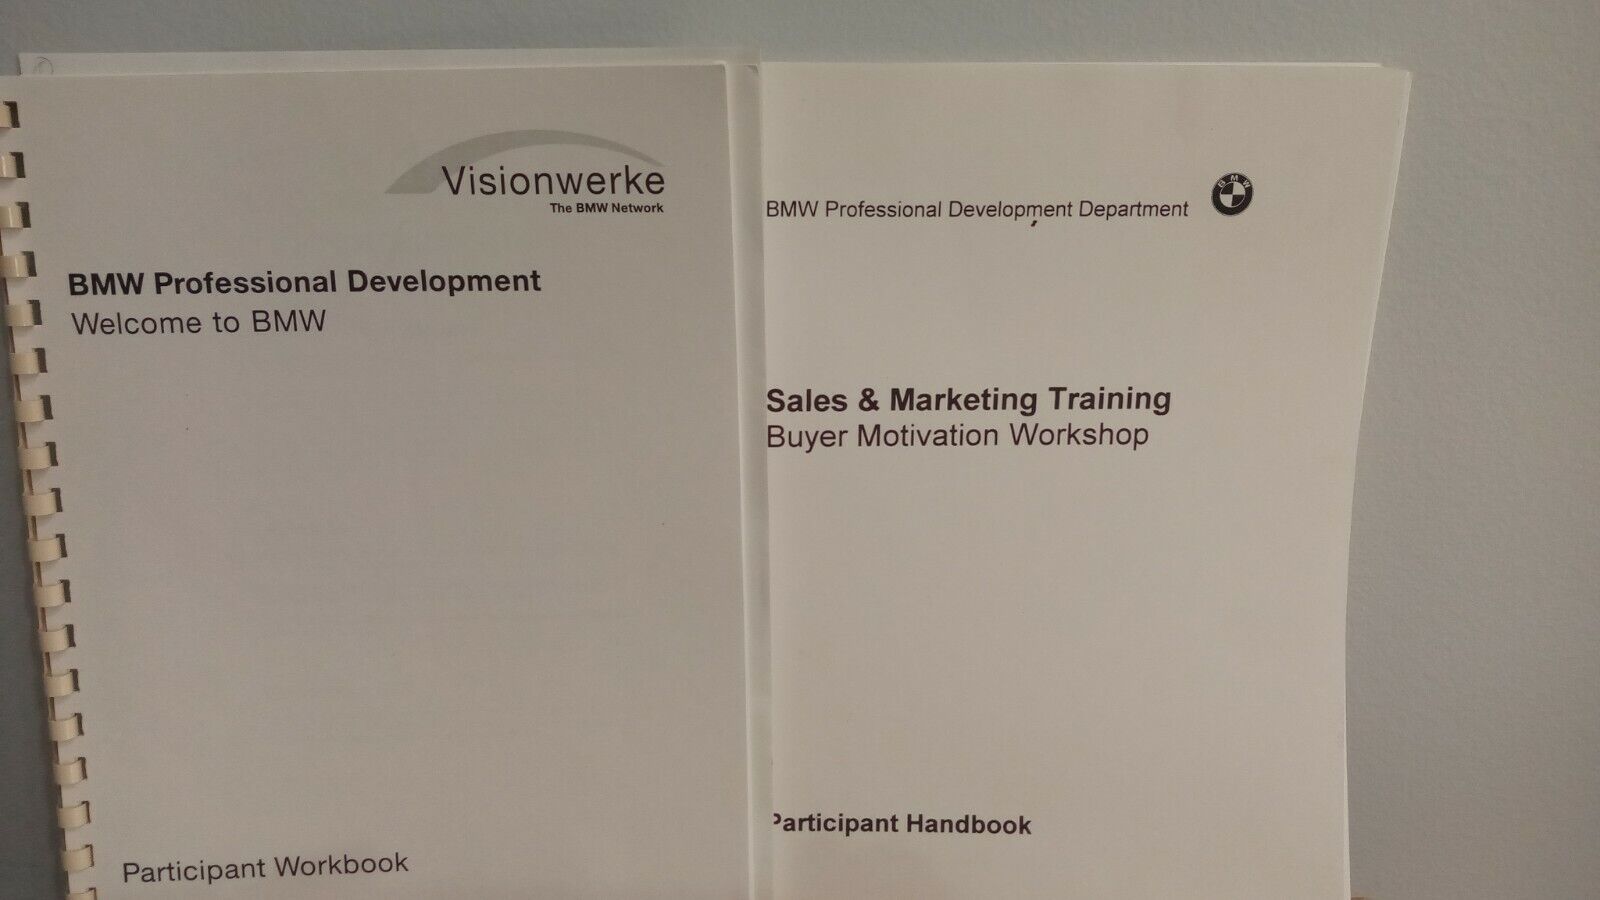 1993 BMW Professional Development Sales & Marketing Training Handbook Workbook 